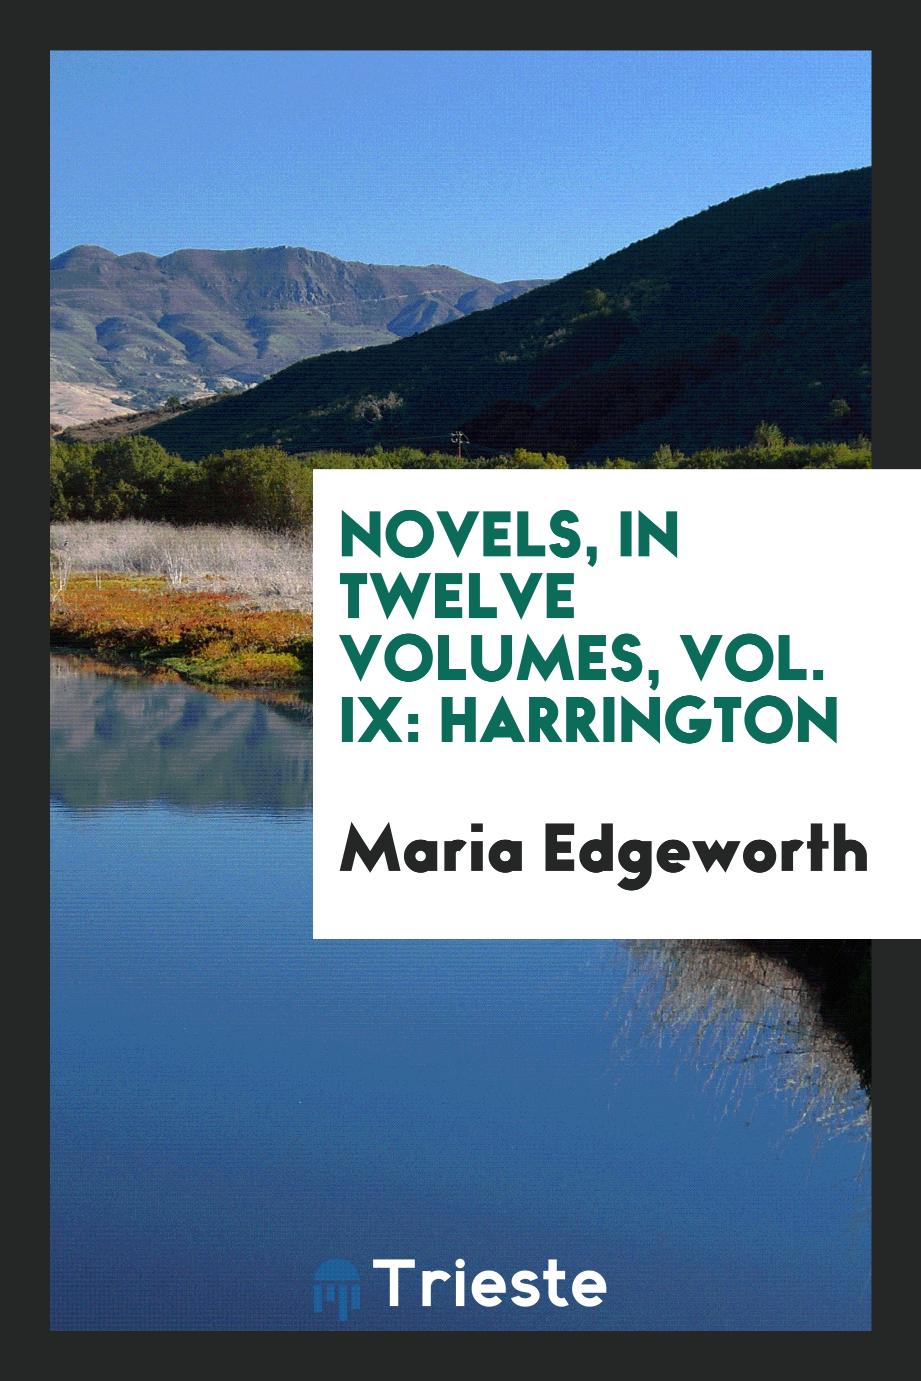 Novels, in twelve volumes, Vol. IX: Harrington